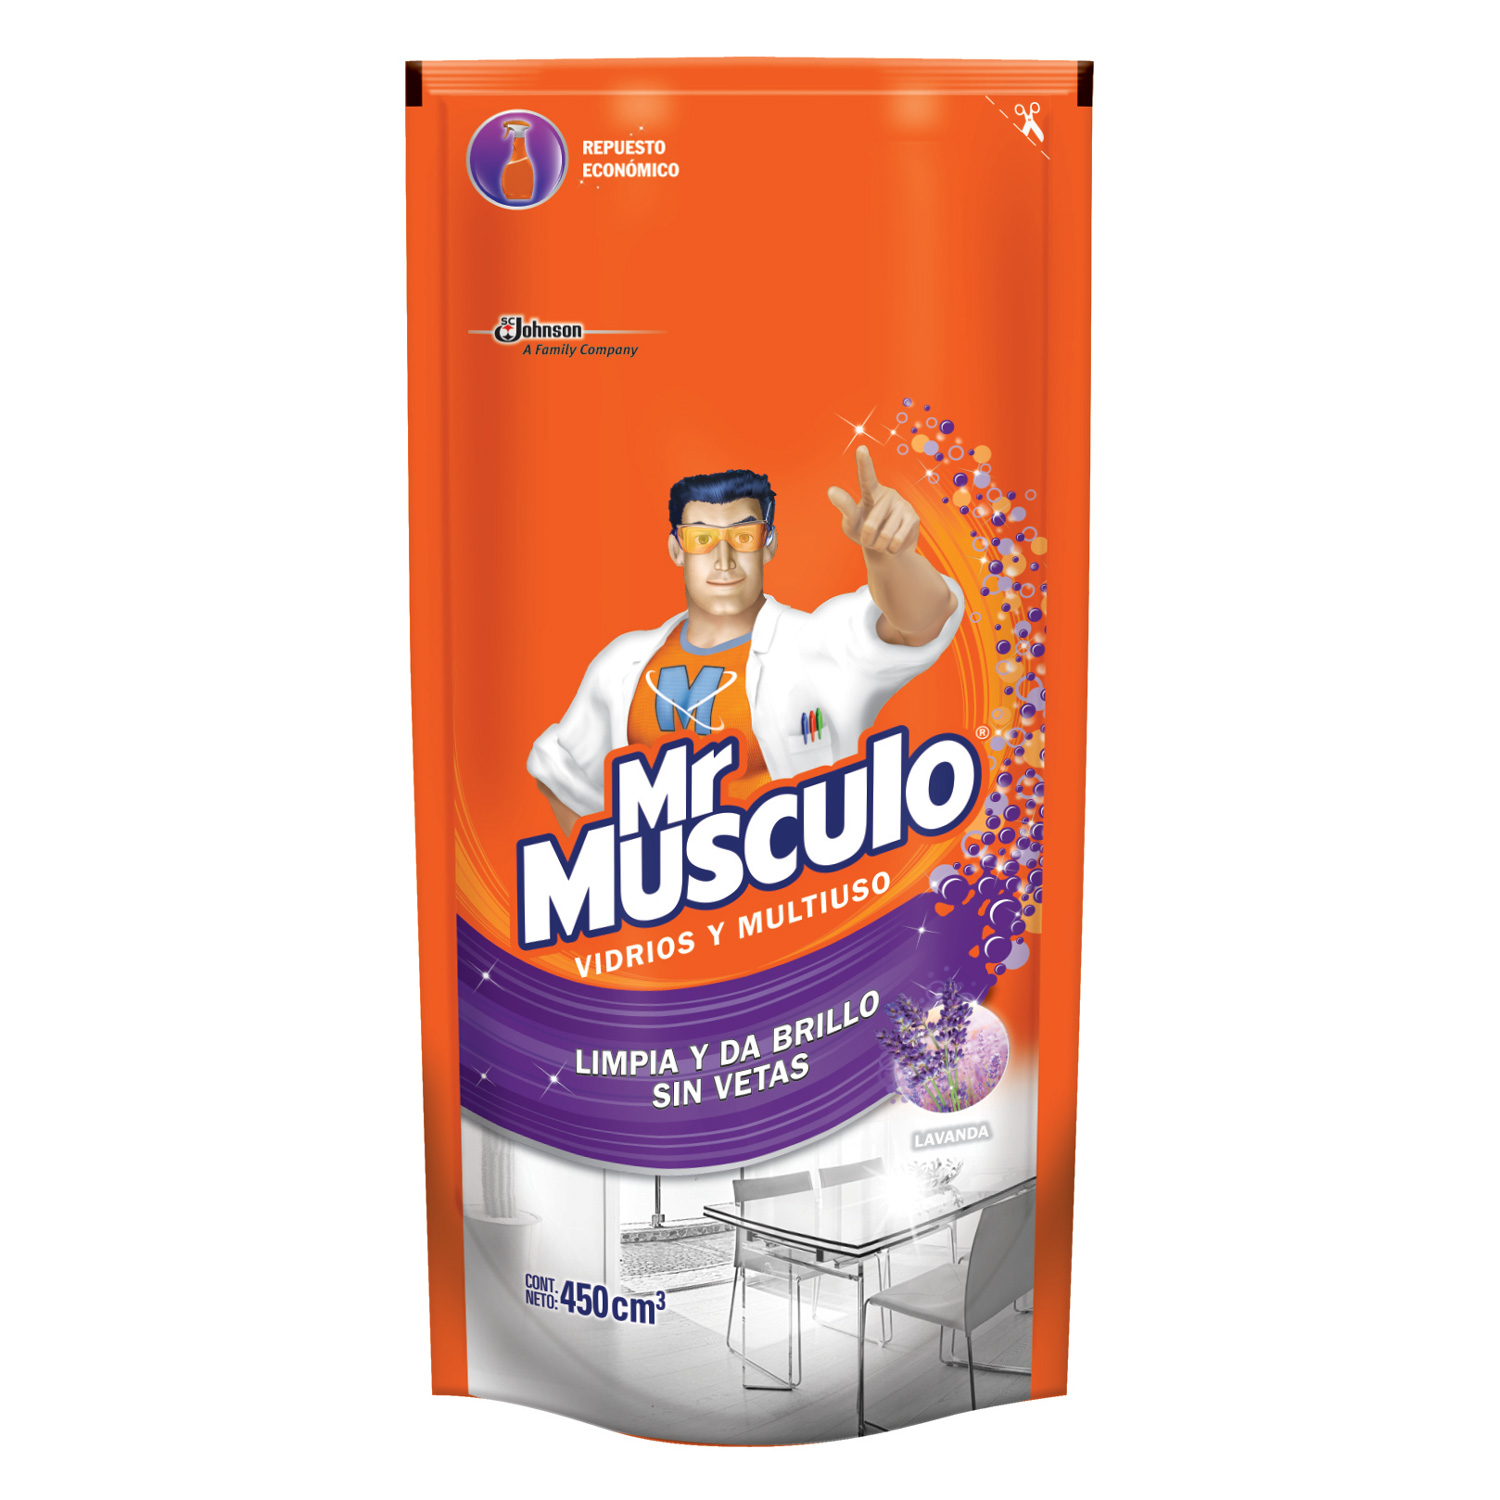 Mr Musculo® Vidrios y Multiuso Lavanda